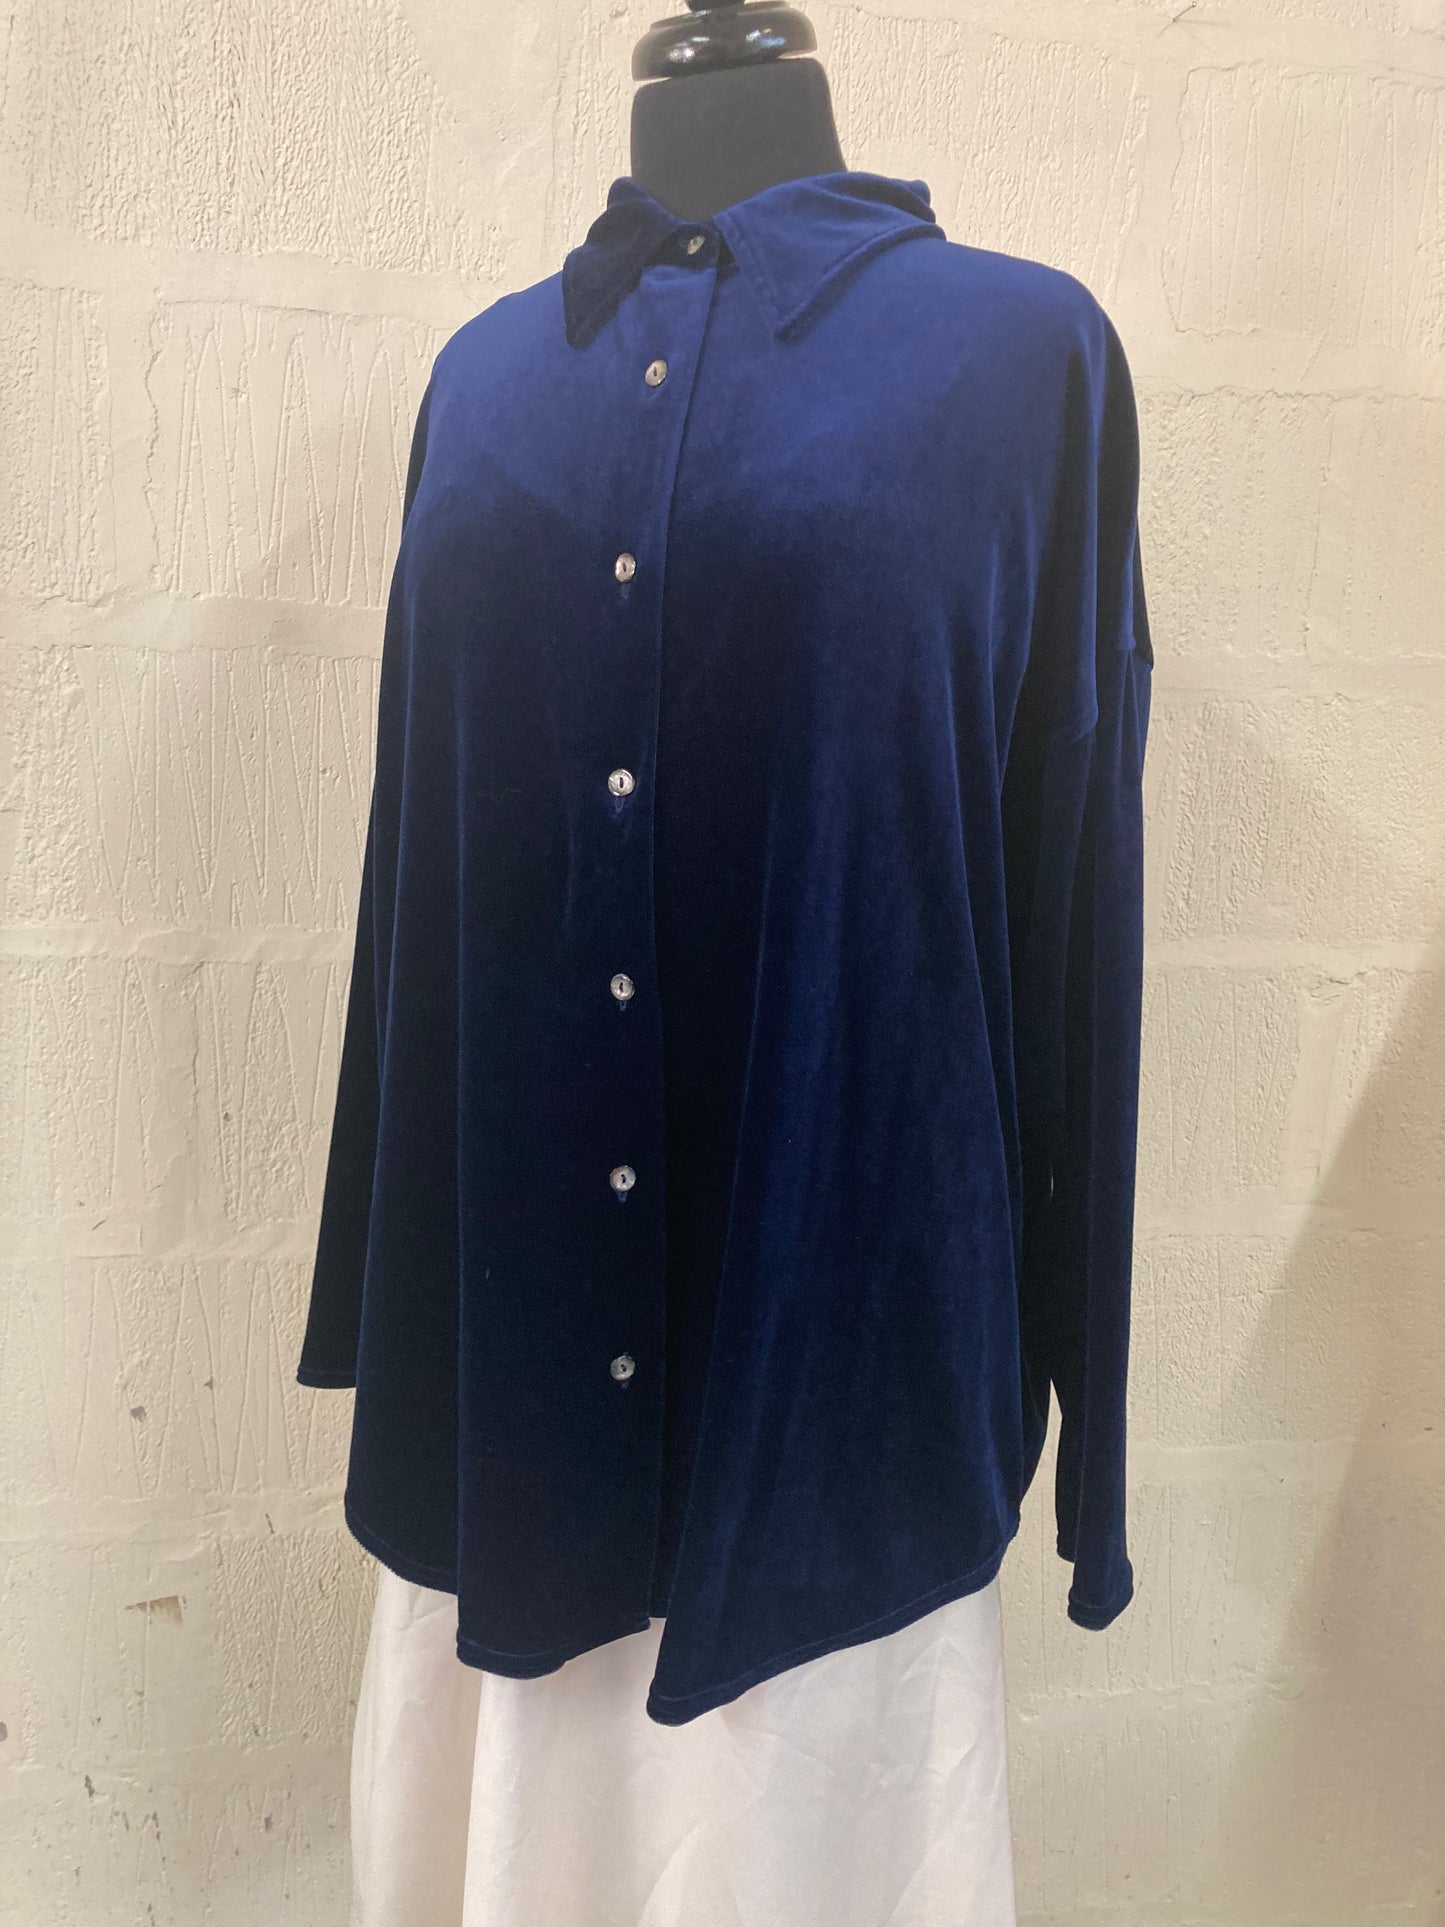 Vintage Berketex Velvet/Velour Navy Shirt Size 18